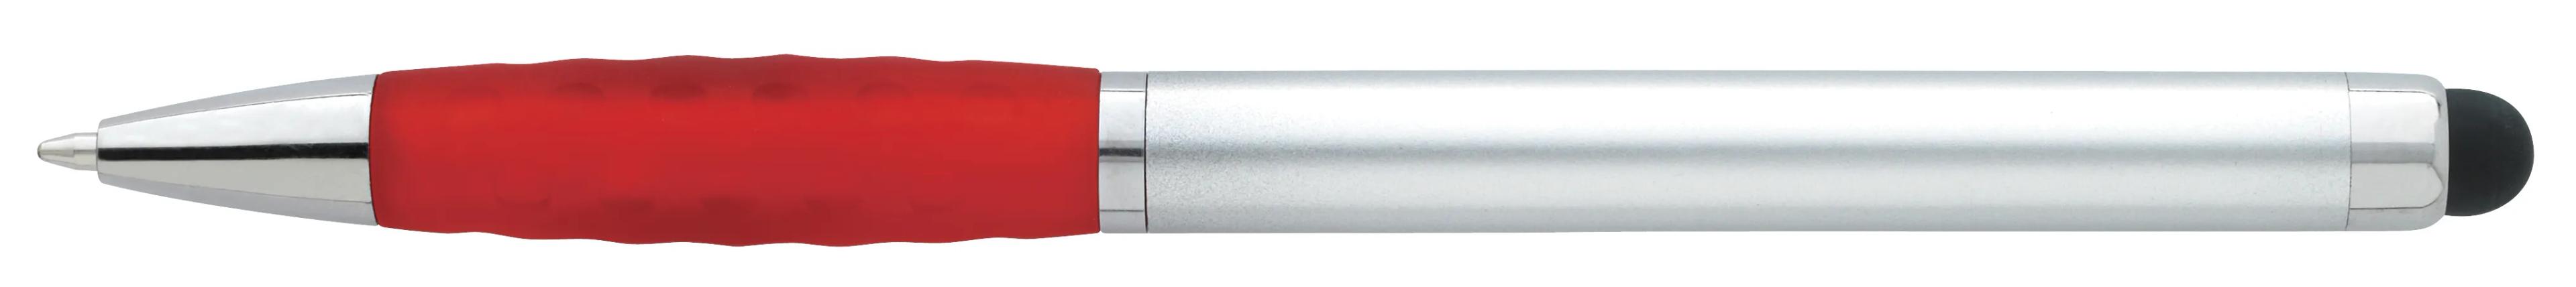 Silver Stylus Grip Pen 6 of 11